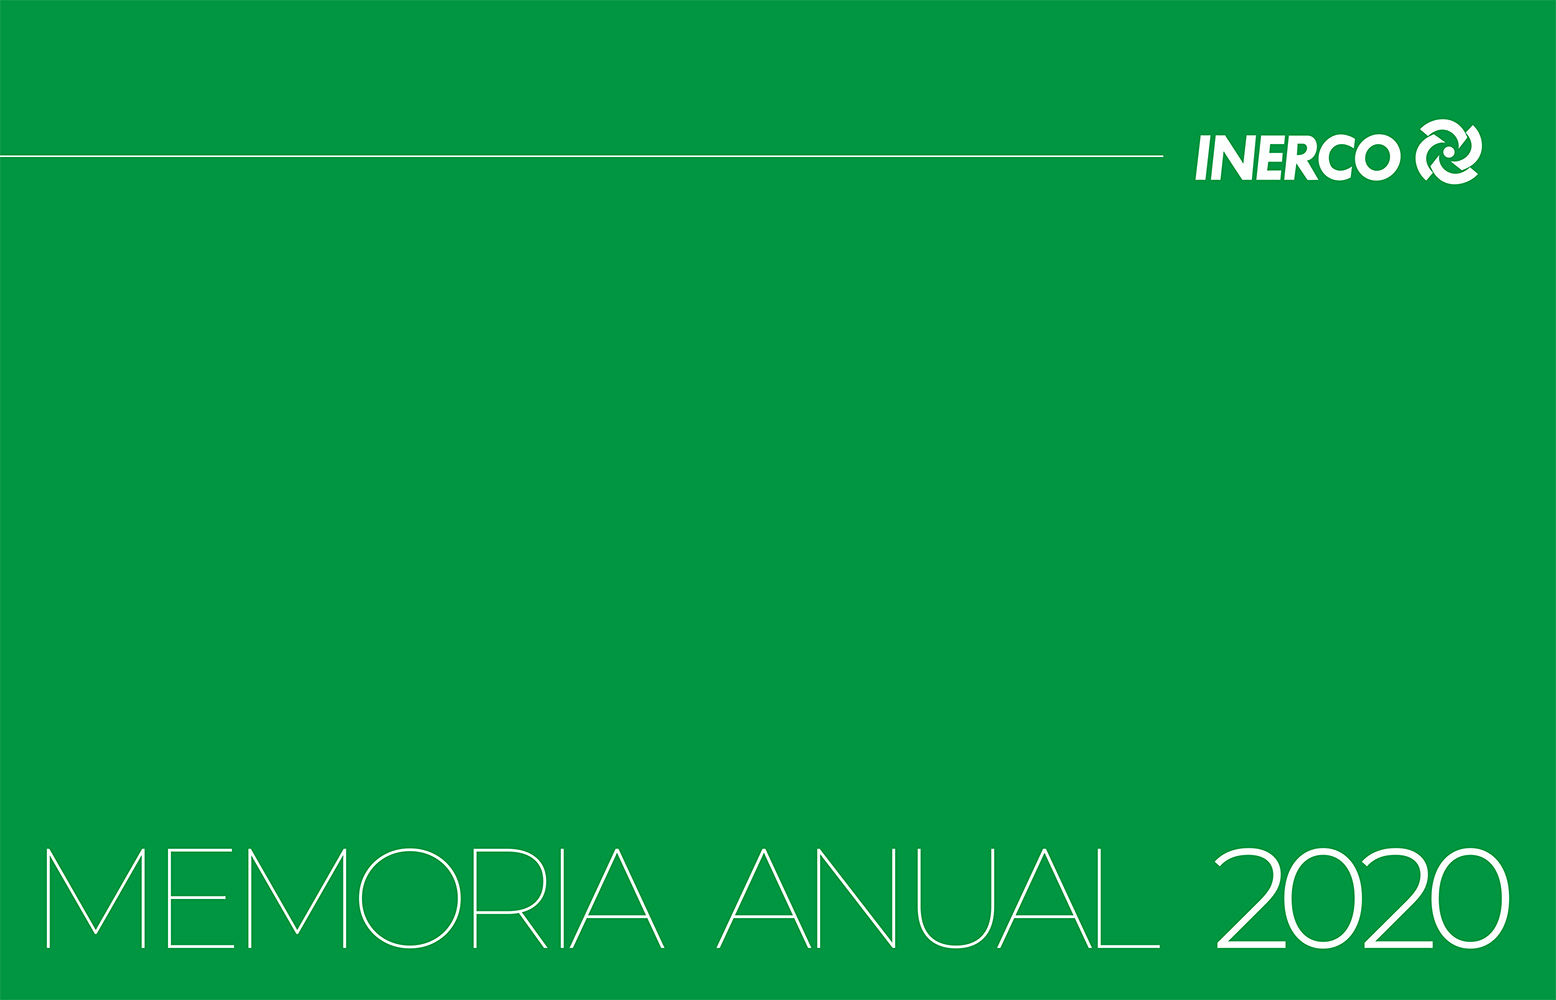 INERCO Annual Report 2020